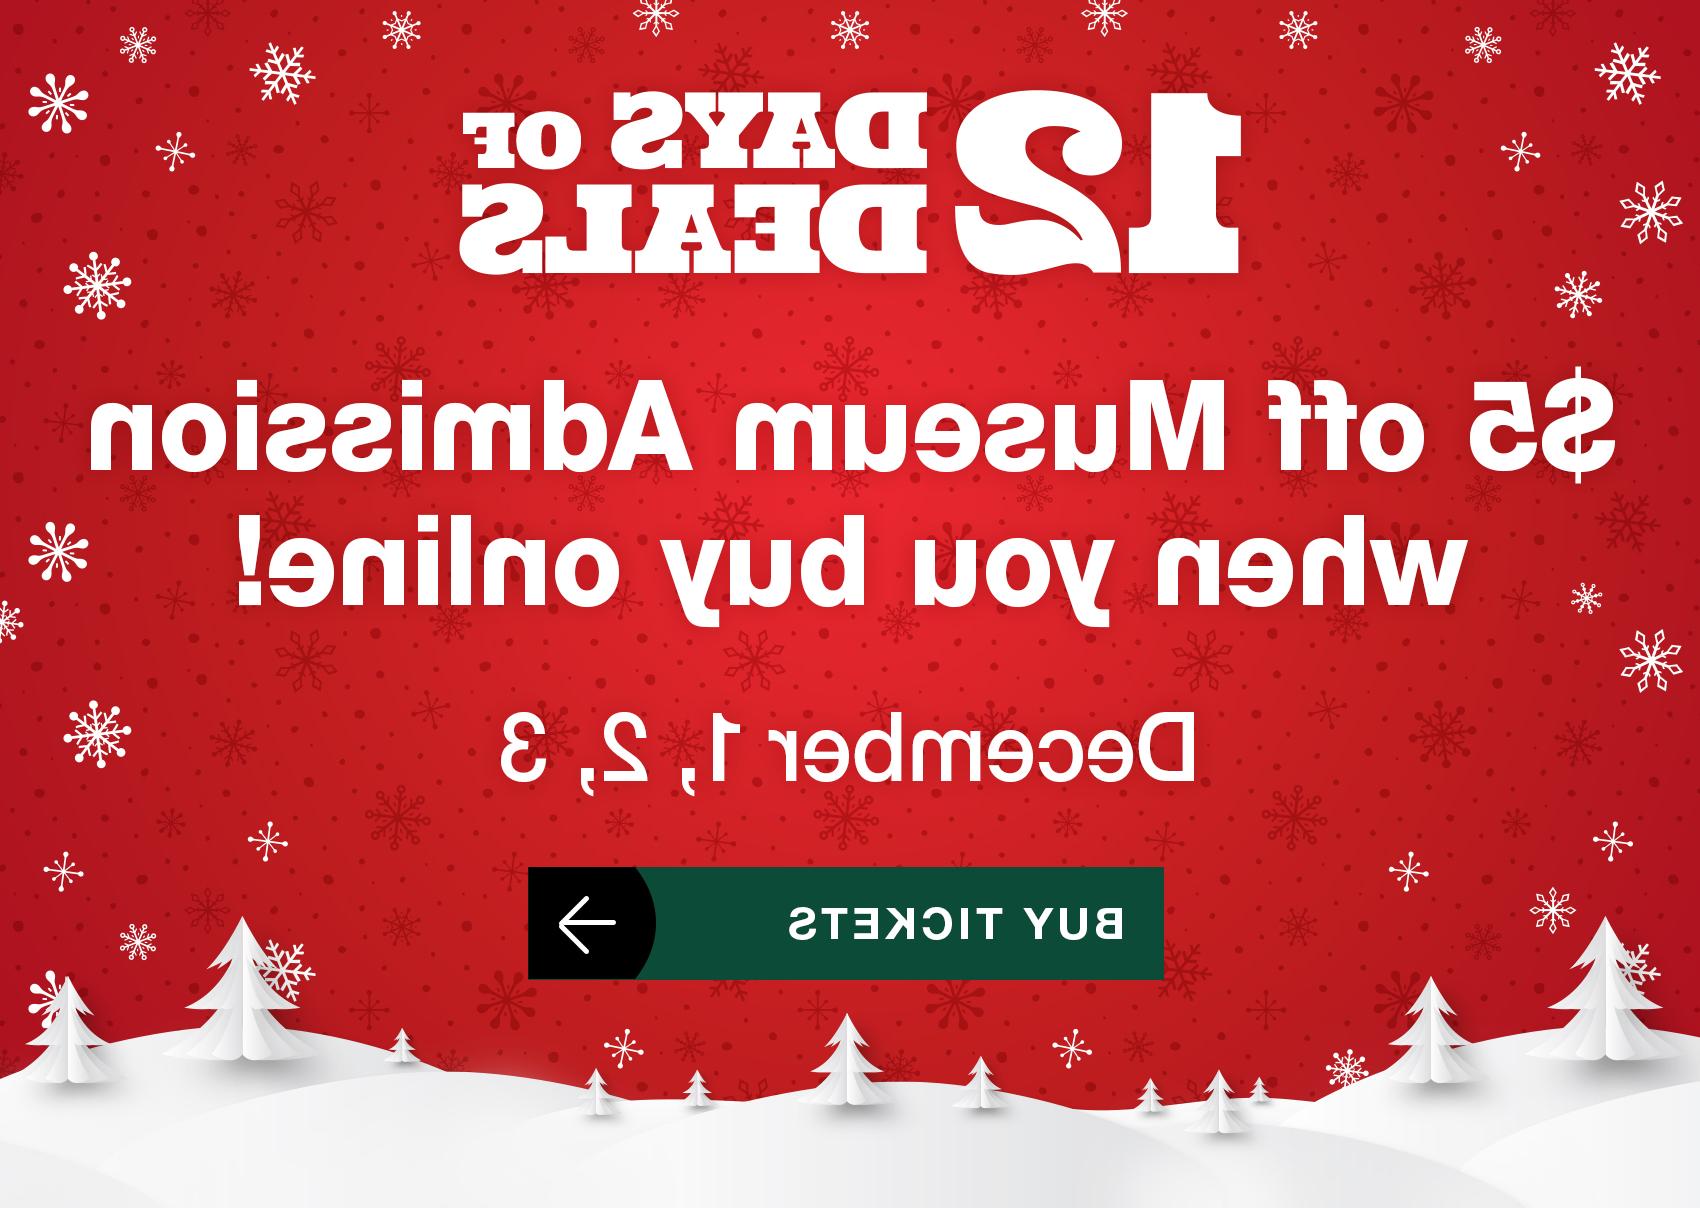 12天优惠! 网上购买博物馆门票可减免5美元! 12月1、2、3日. 买票.